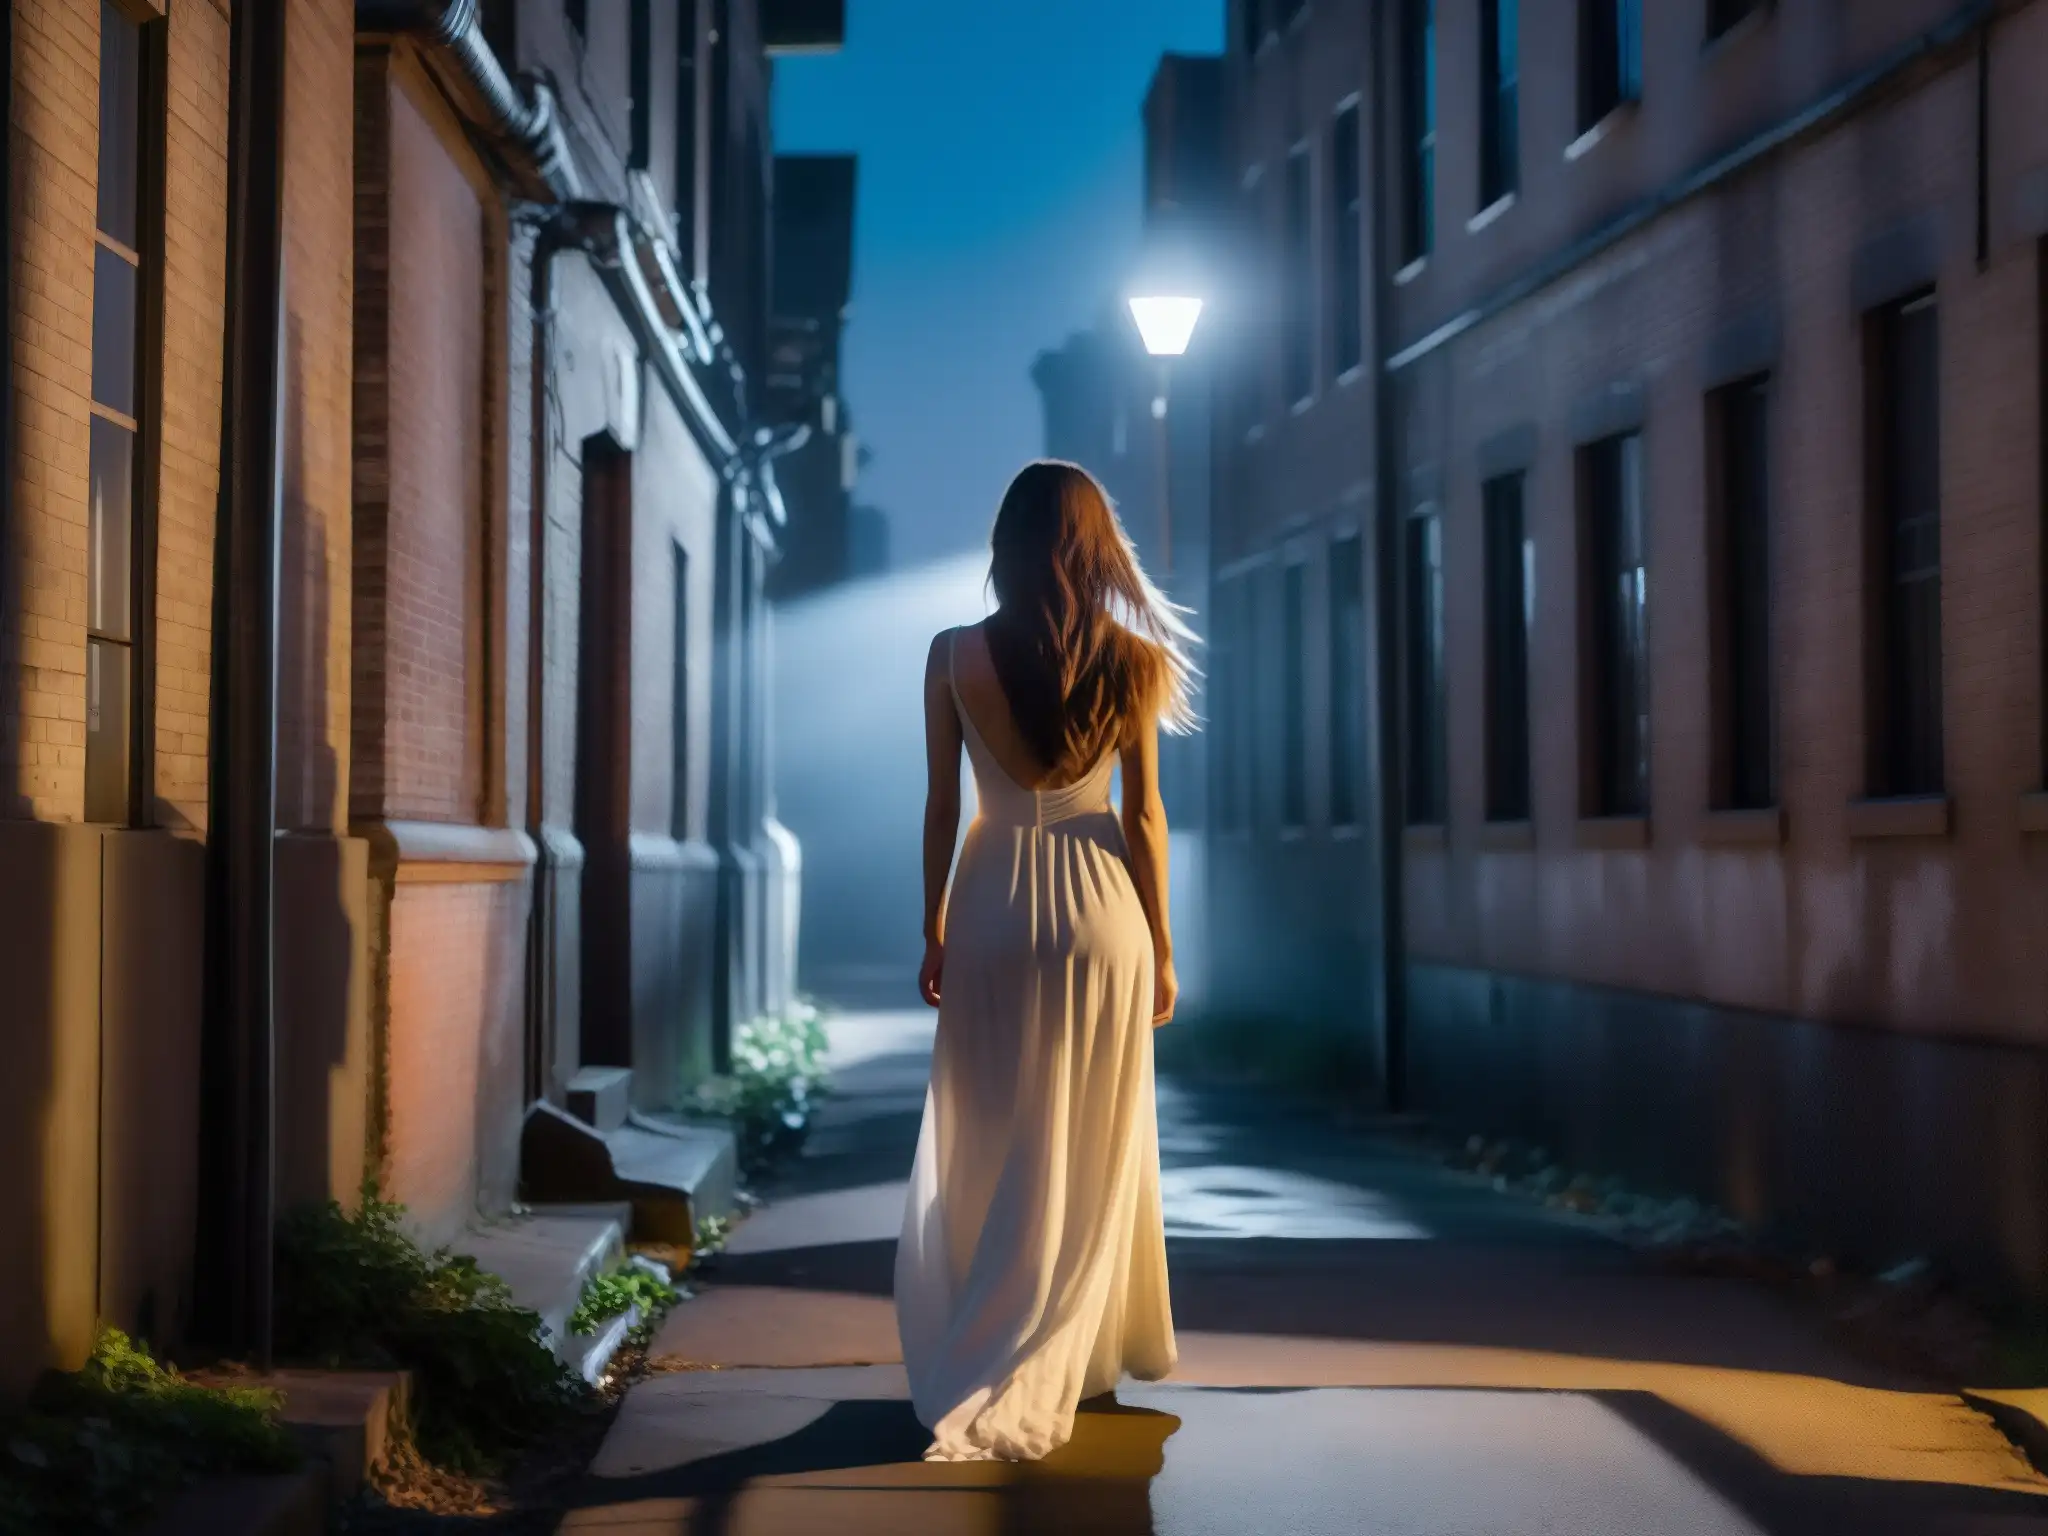 En la oscuridad de un callejón urbano, la figura fantasmal de una mujer con vestido blanco largo y cabello suelto flota con gracia espeluznante